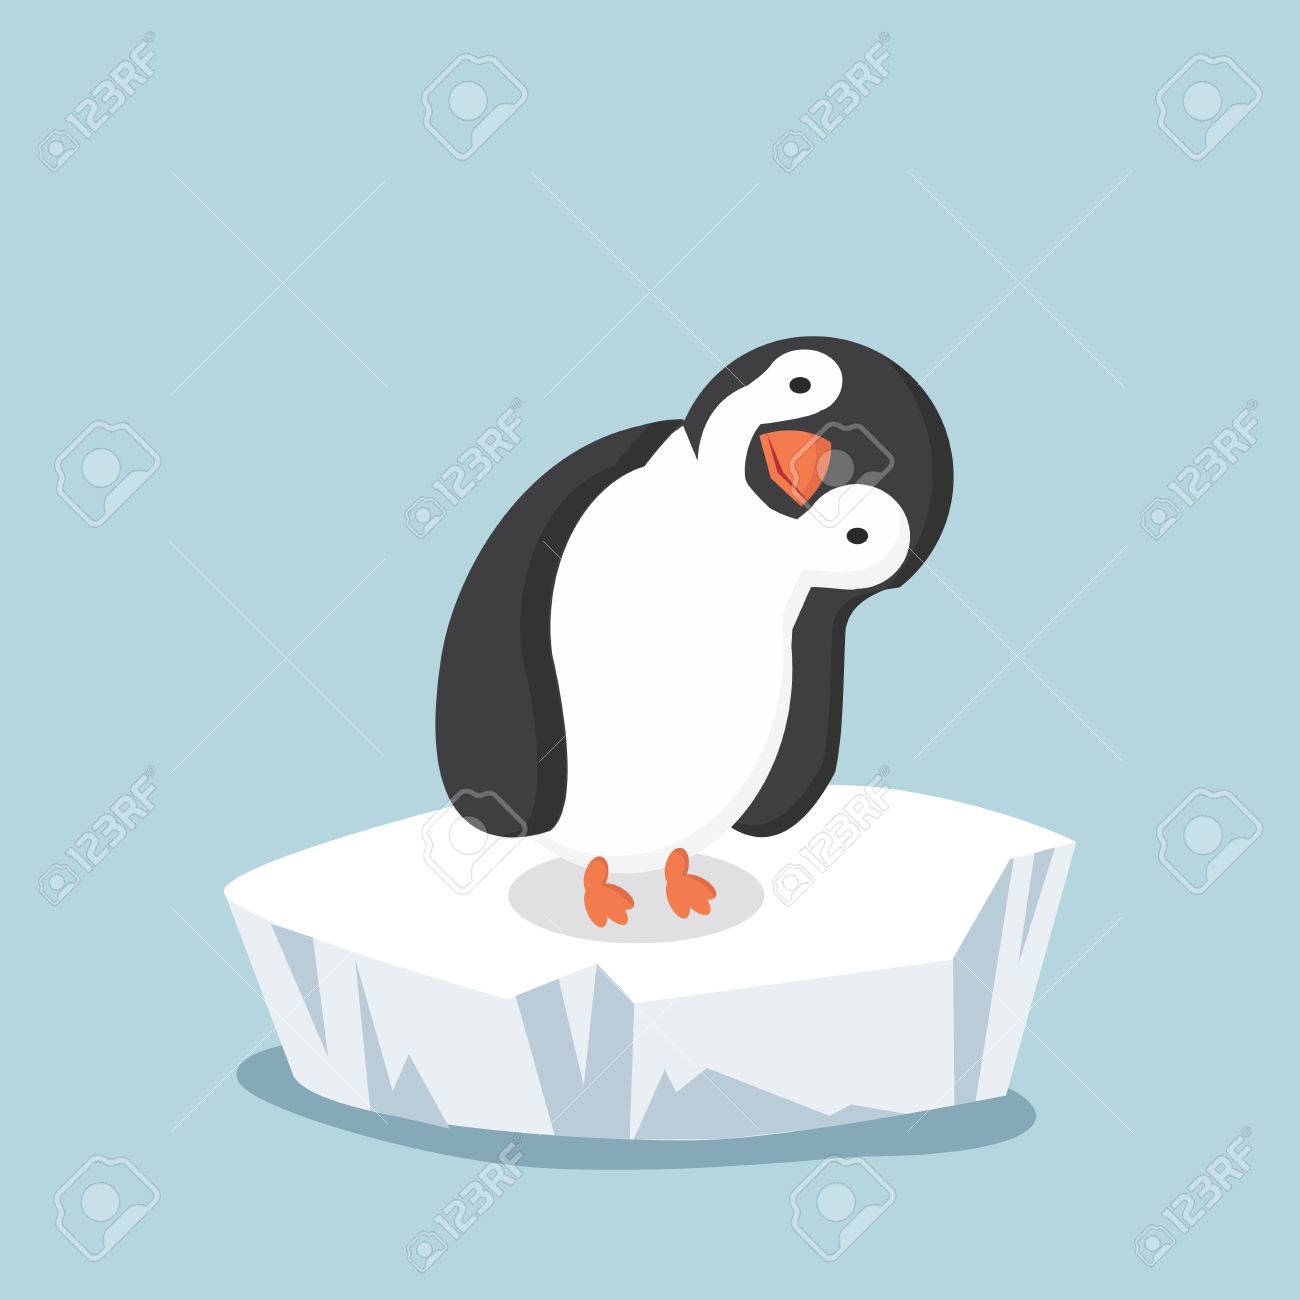 iceberg clipart penguine